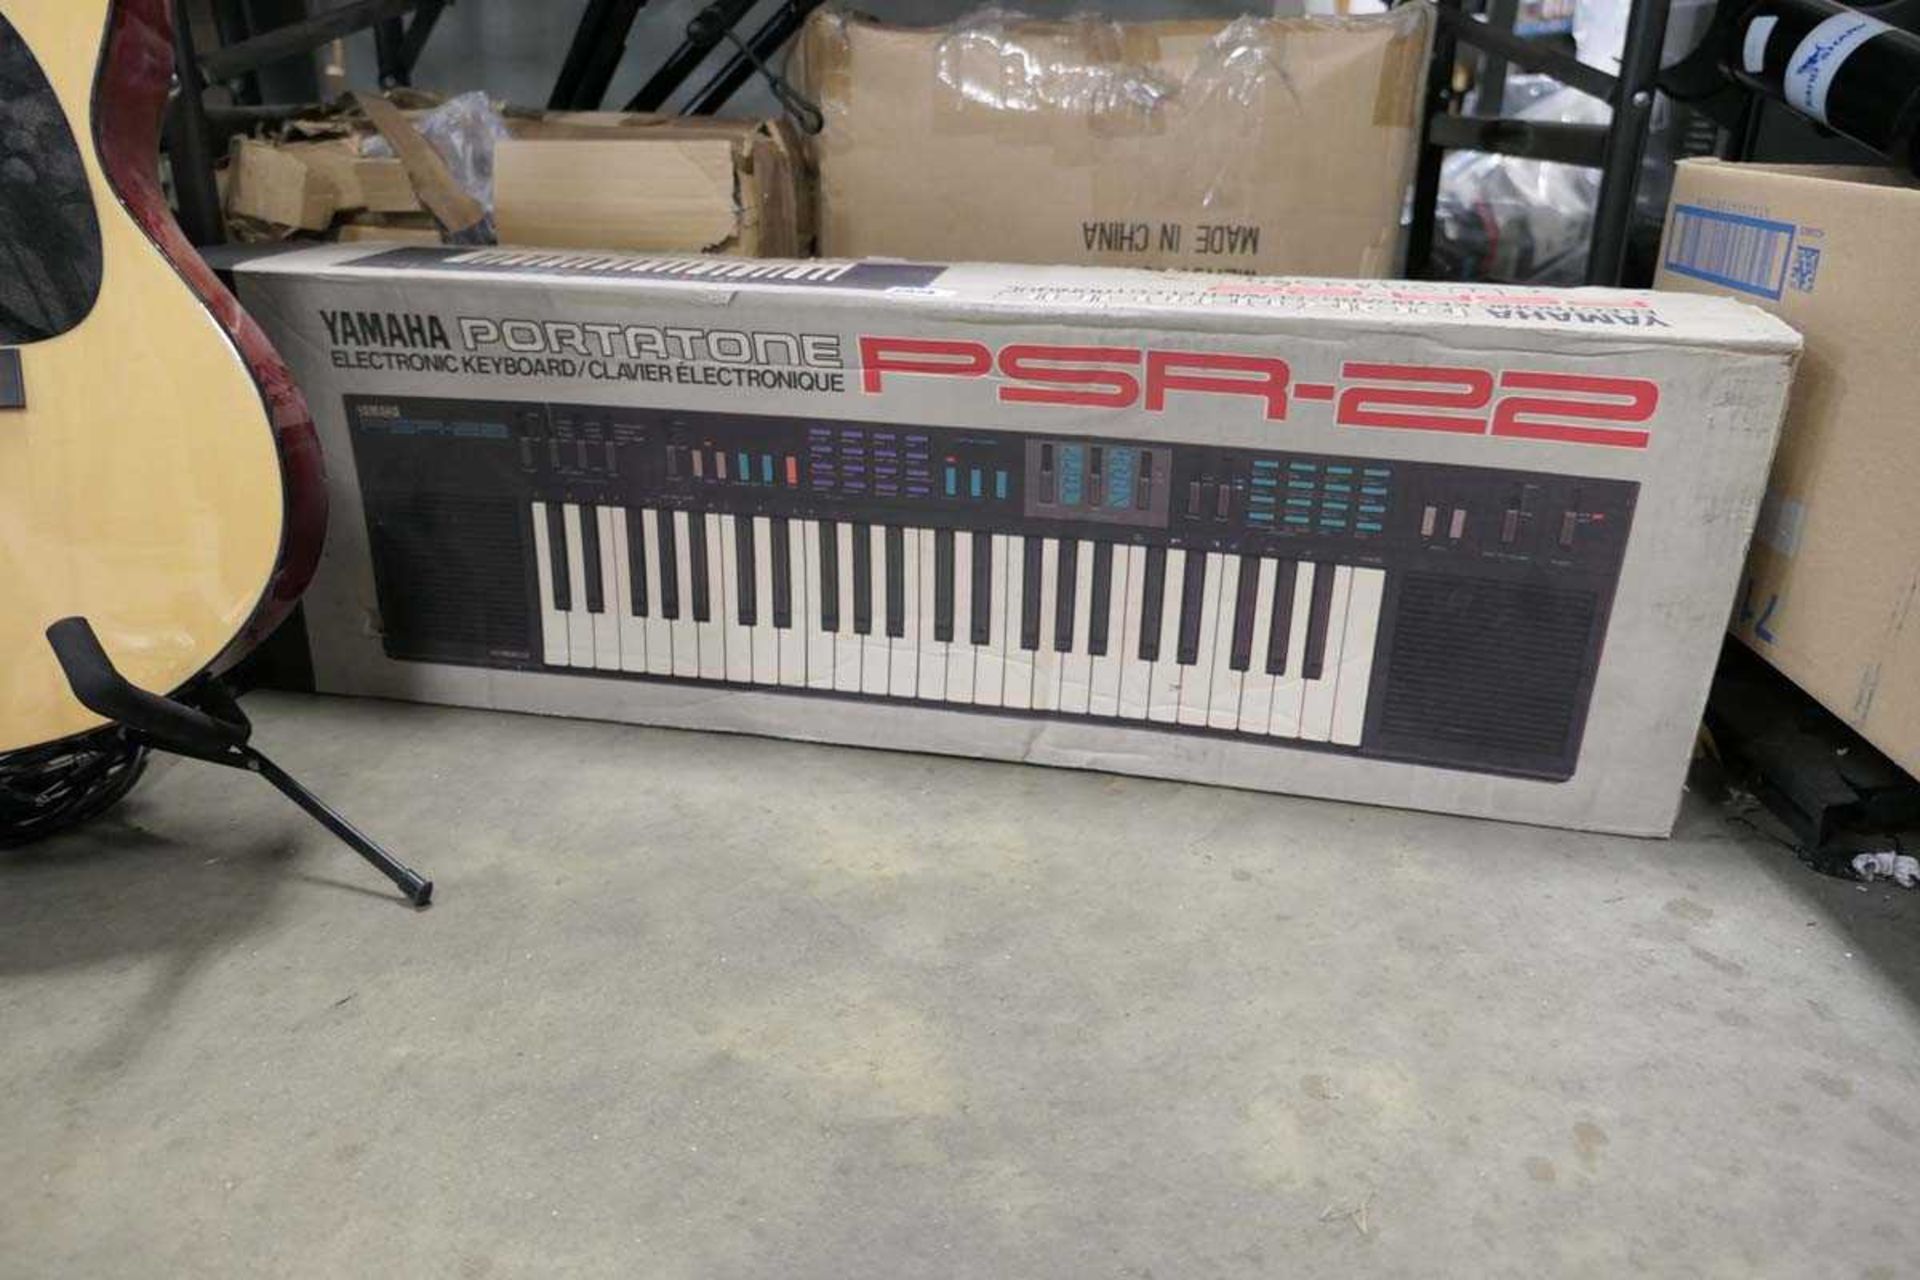 Yamaha Portatone PSR22 keyboard with box